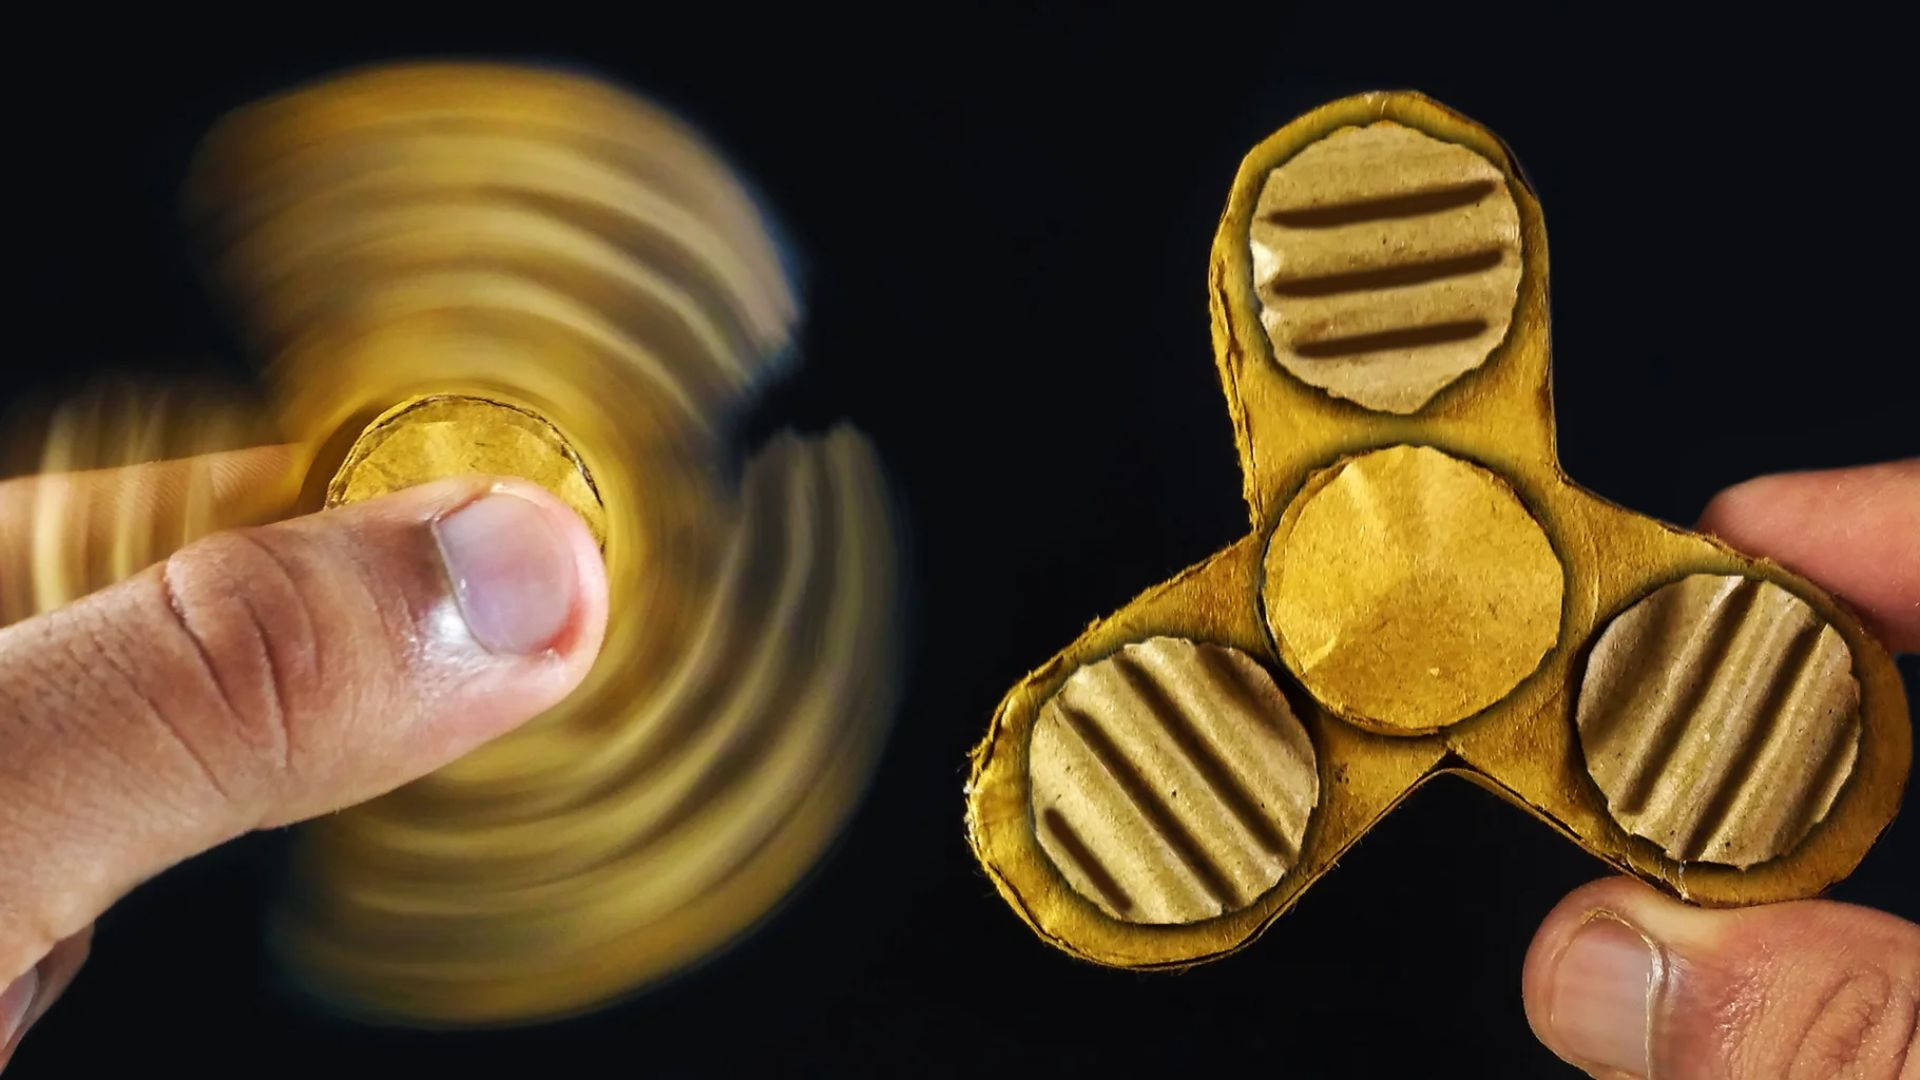 Exquisite Golden Fidget Spinner In Action